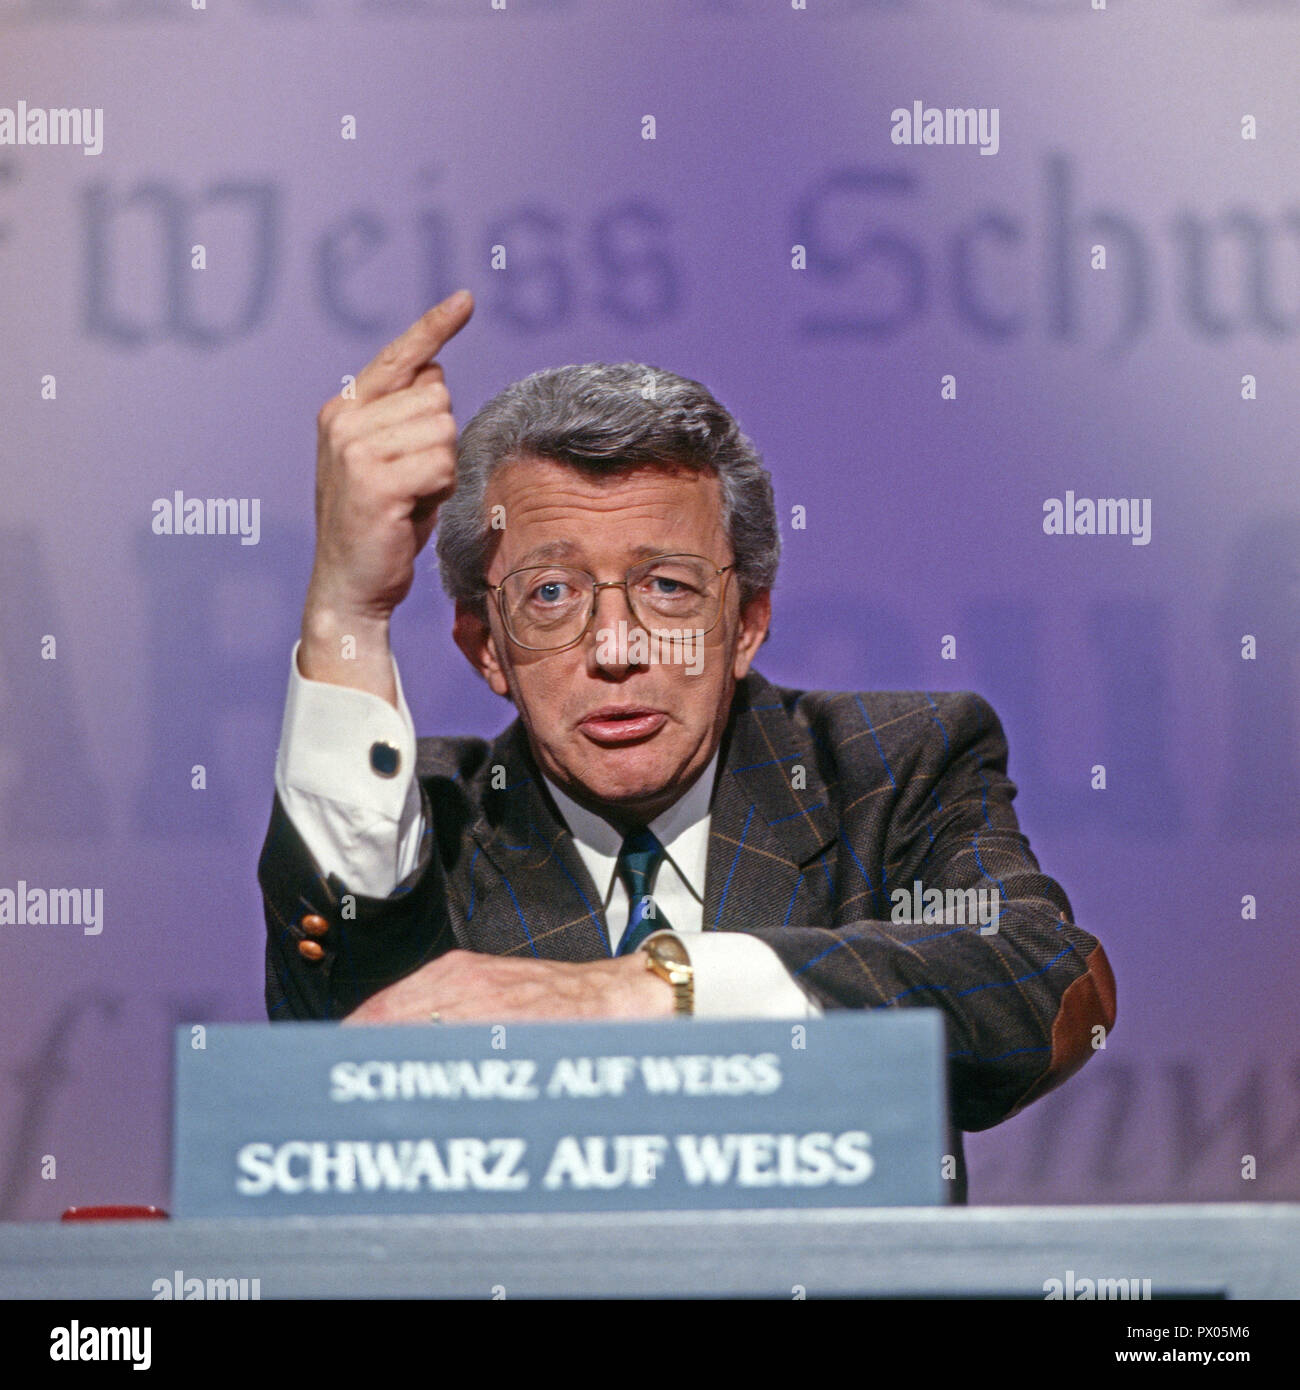 Schwarz auf weiß - Die Jagd nach Schlagzeilen, Fernsehshow, Deutschland 1988, moderatore Dieter Heck Thomas Foto Stock